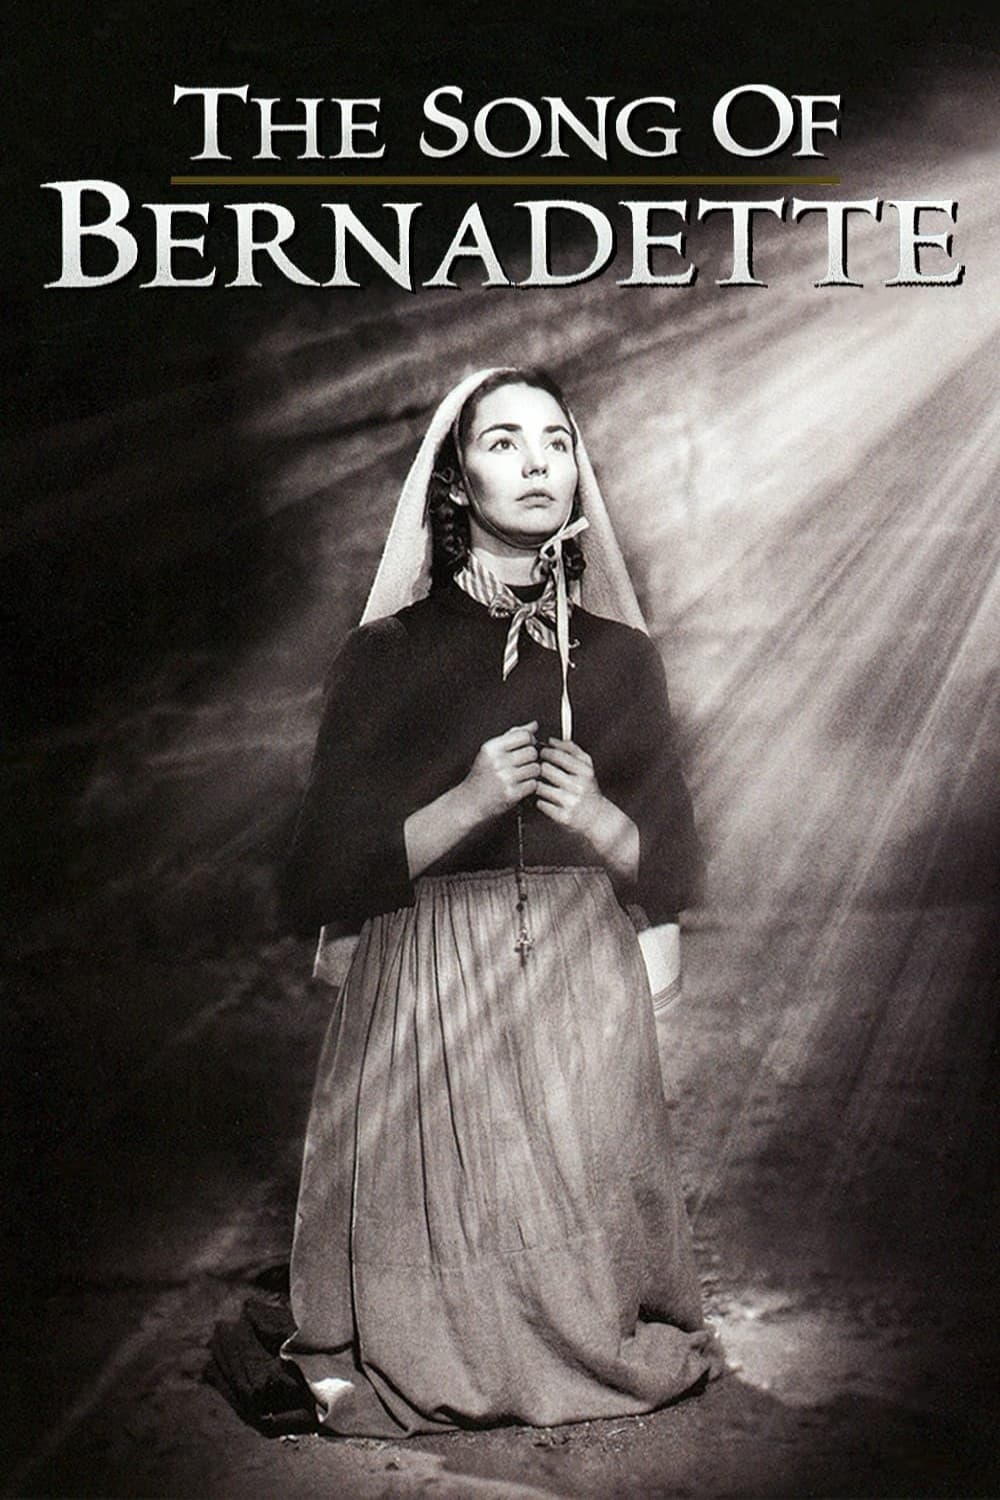 La canción de Bernadette